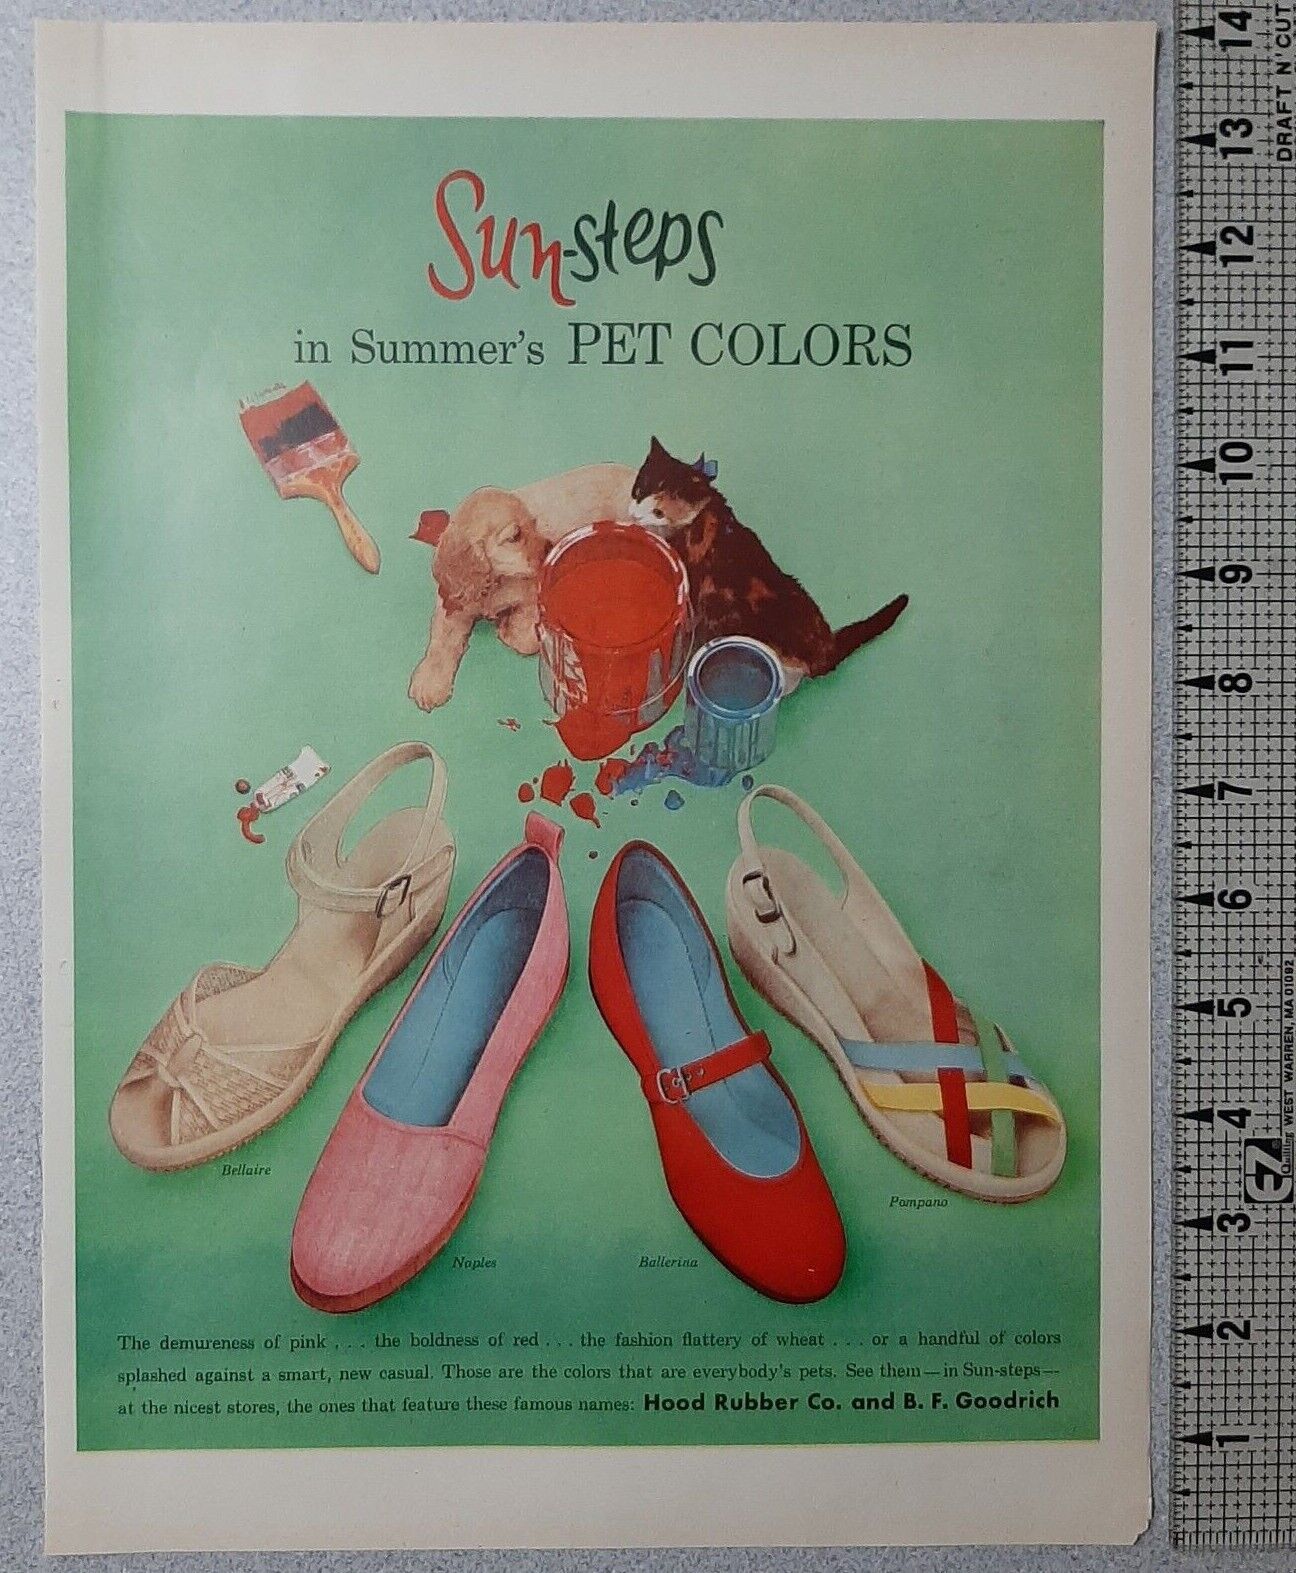 1954 Sun Steps Vintage Print Ad Shoes Pet Colors Puppy Kitten Paint BF Goodrich